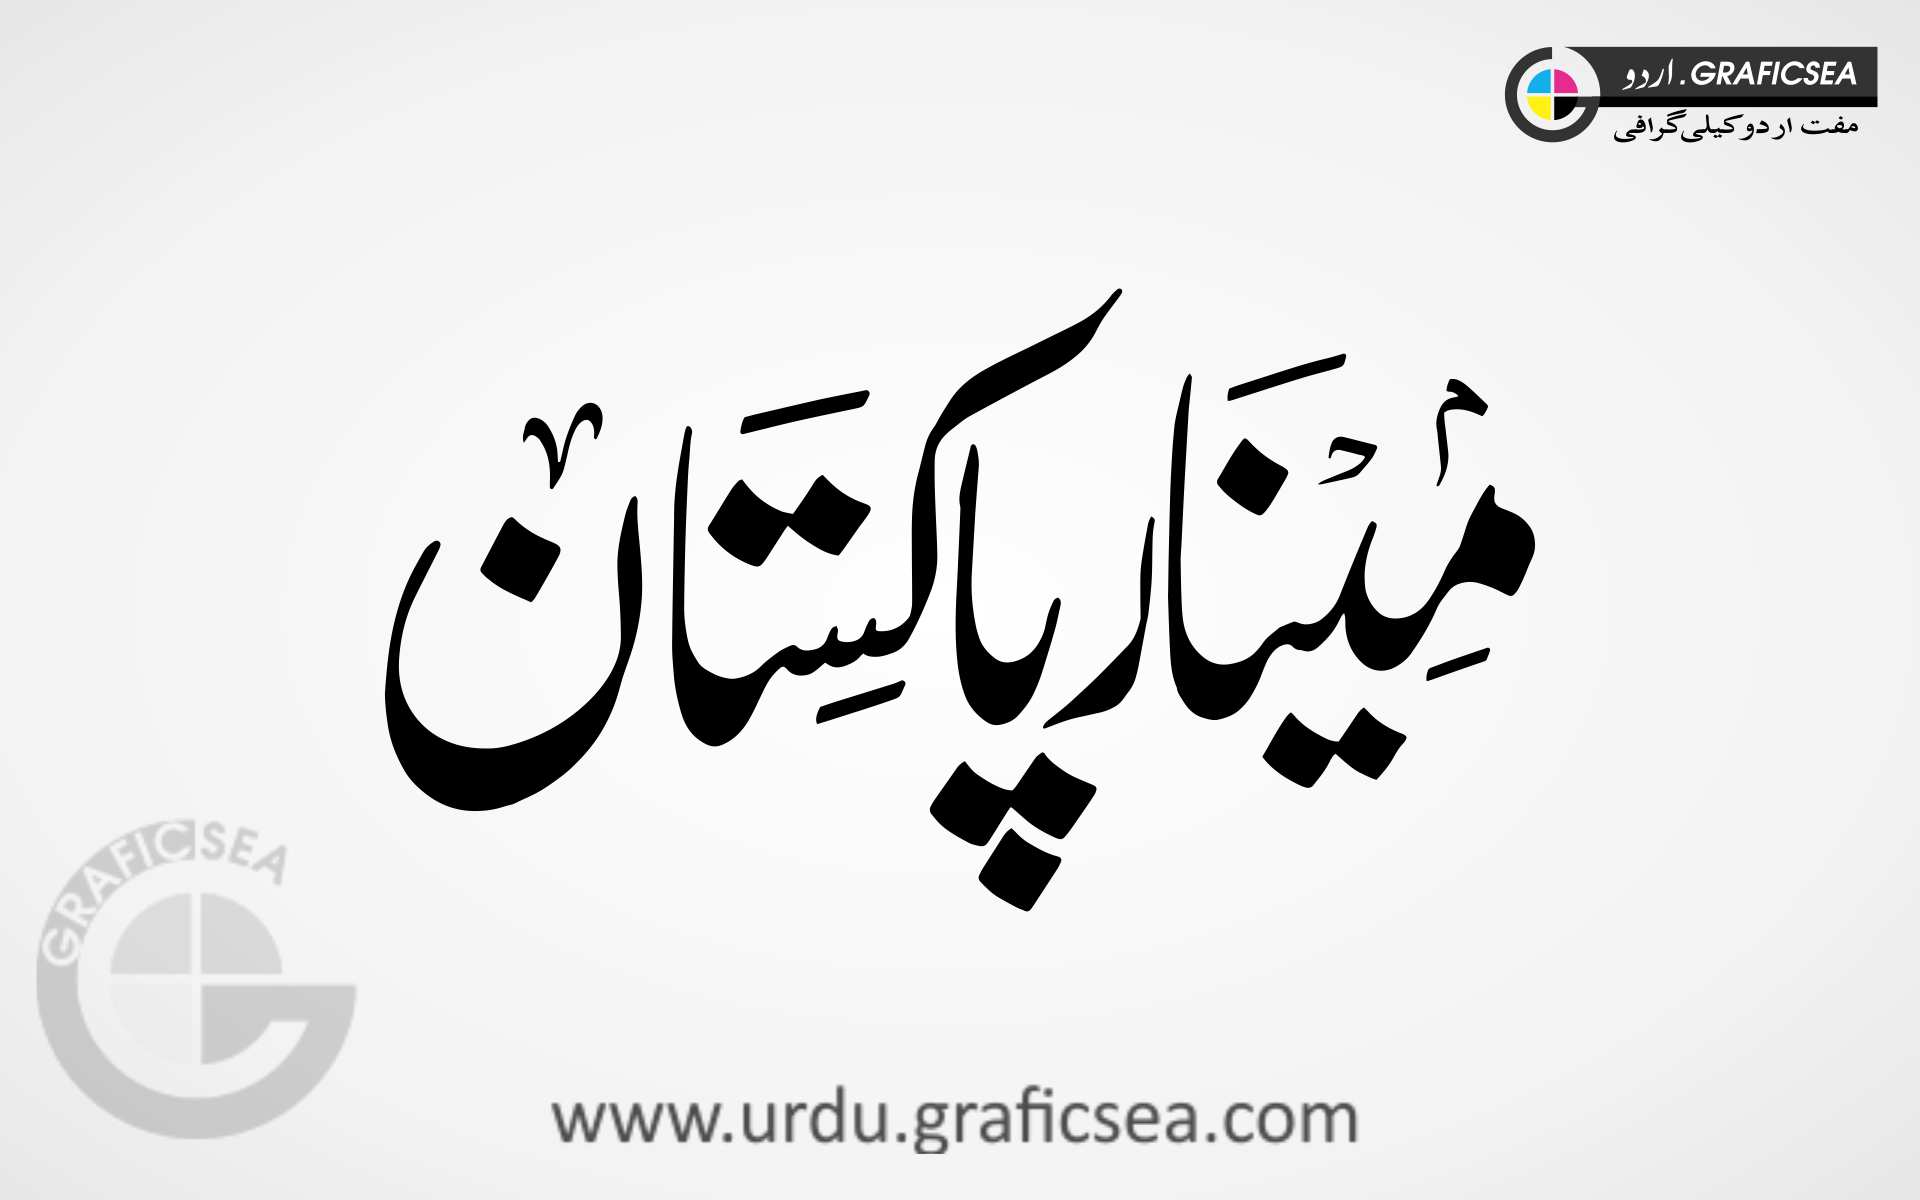 Minar e Pakistan Nastaliq Word Urdu Calligraphy